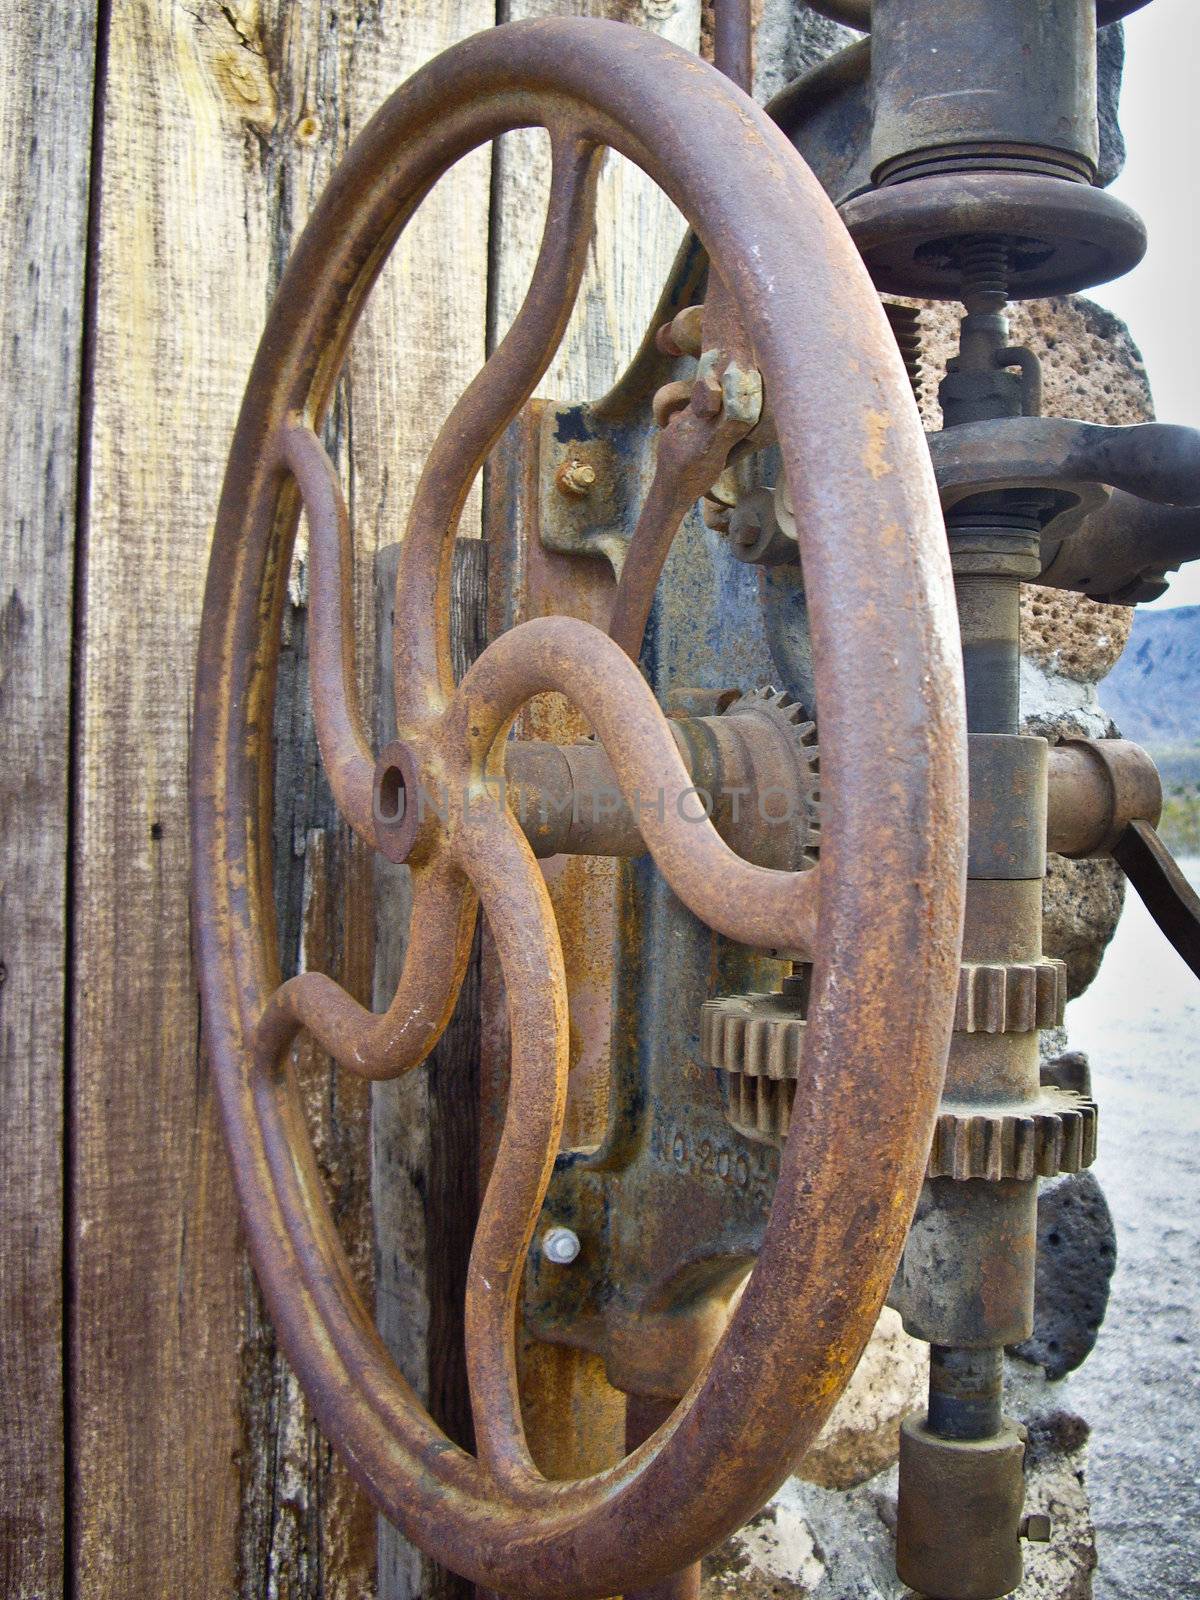 Old Metal Wheel by emattil